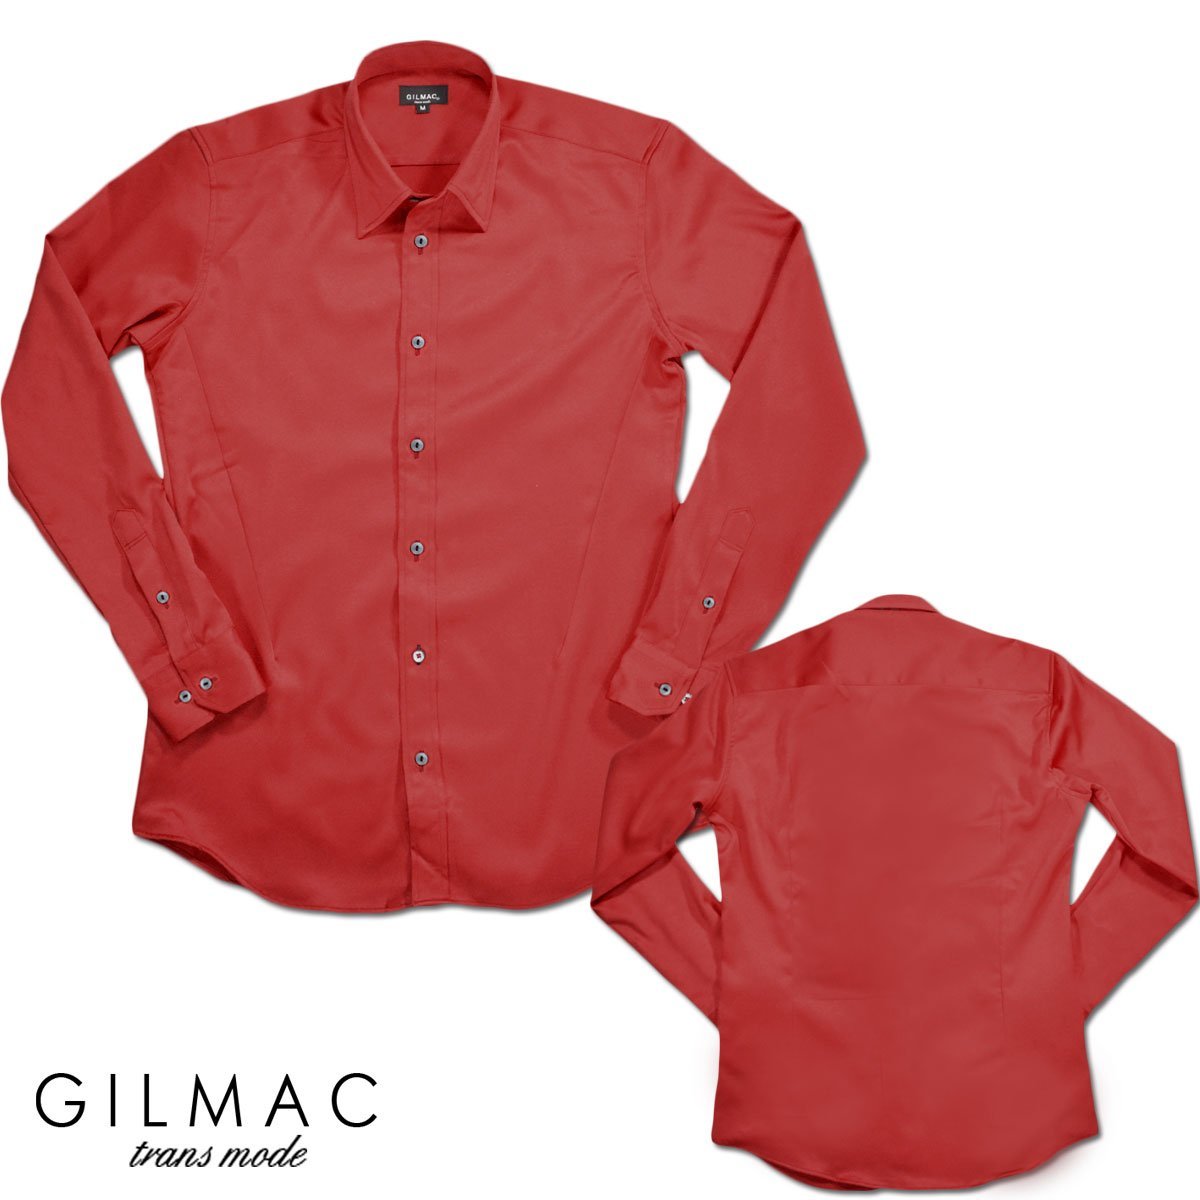 31702-2 GILMAC 無地 レギュラーカラー パウダーサテン長袖シャツ メンズ(レッド赤) LL ワイシャツ ドレスシャツ 結婚式 パーティー_画像4